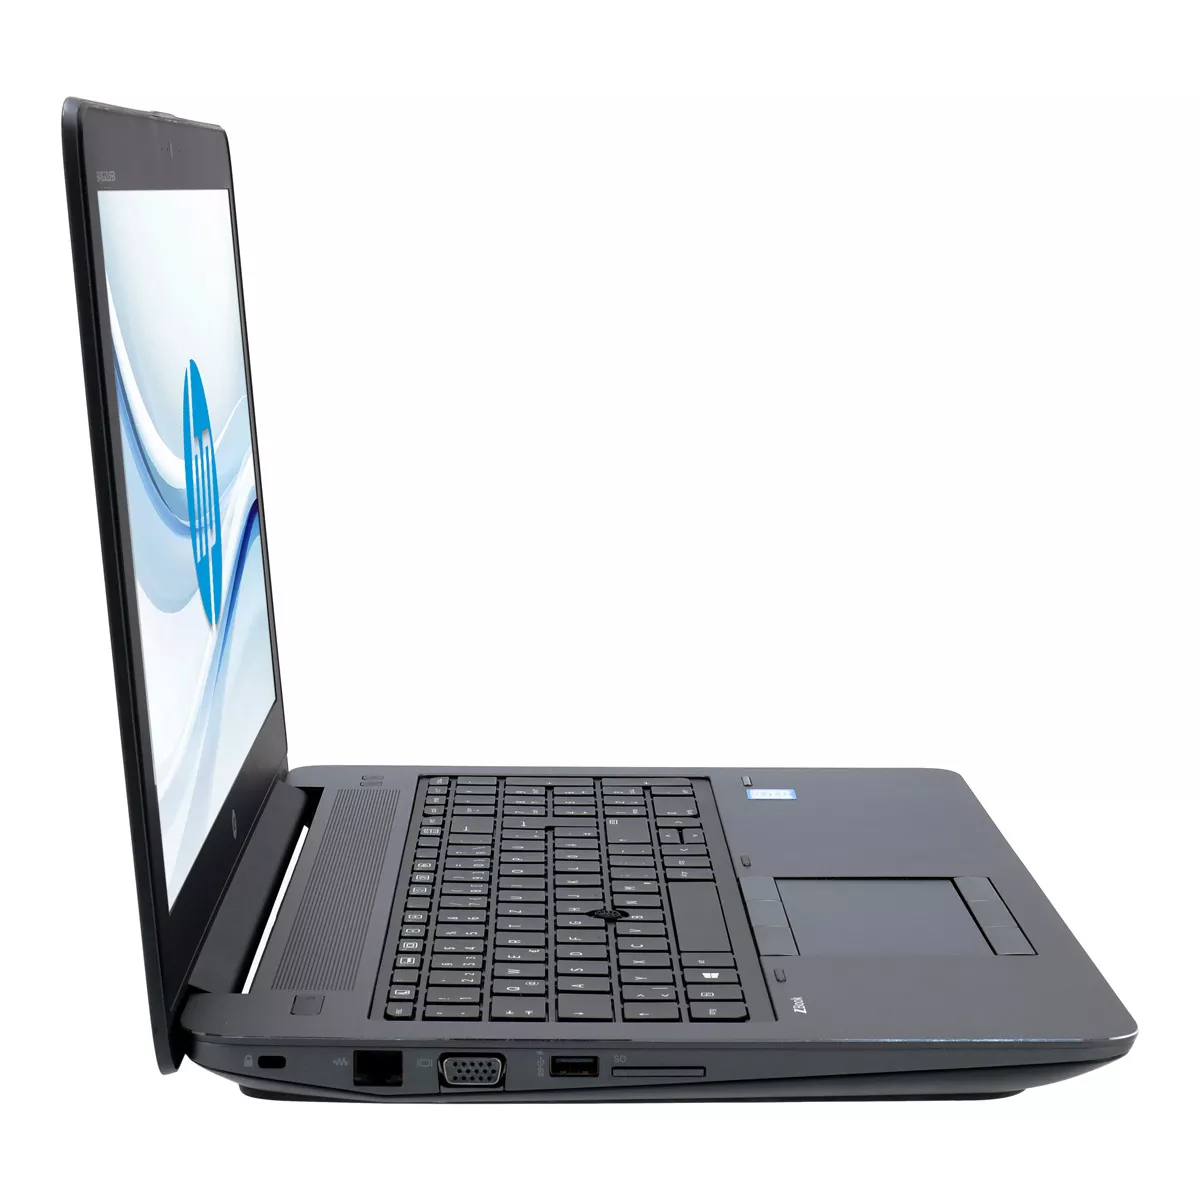 HP ZBook 15 G3 Core i7 6700HQ Full-HD nVidia Quadro M1000M 256 GB M.2 SSD B-Ware